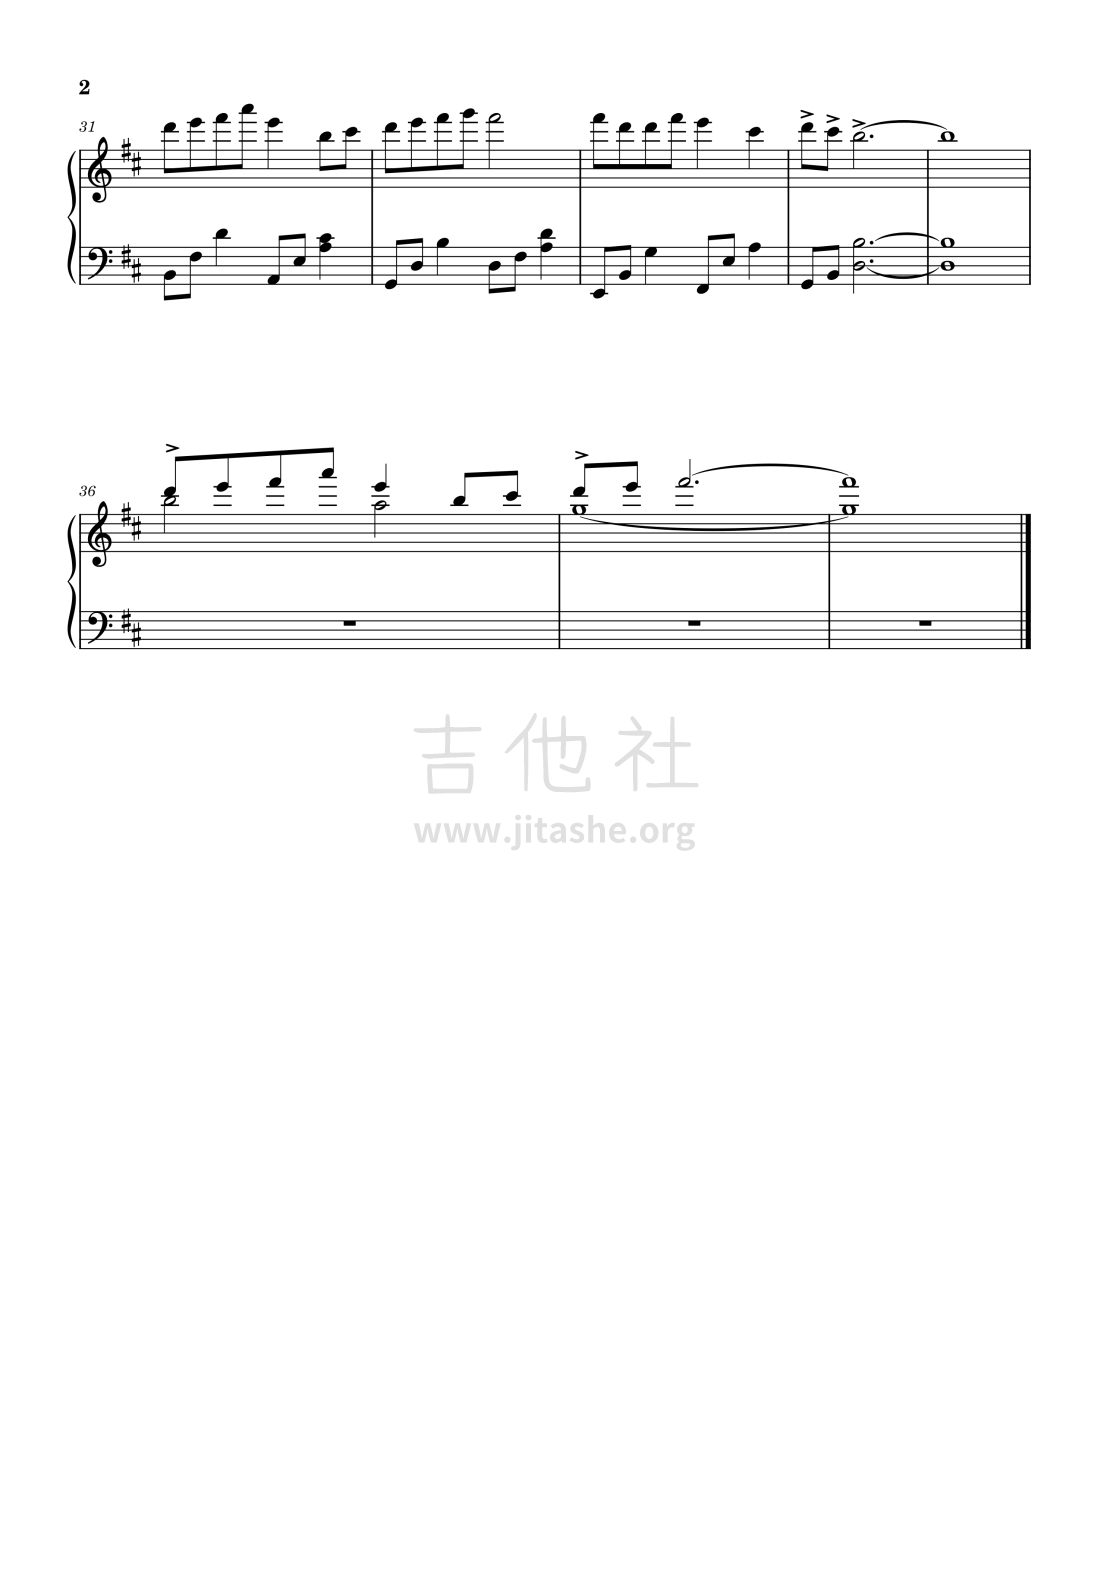 打印:缘之空bgm - Old Memory吉他谱_动漫游戏(ACG)_缘之空 ヨスガノソラ - Old Memory-钢琴-2.png